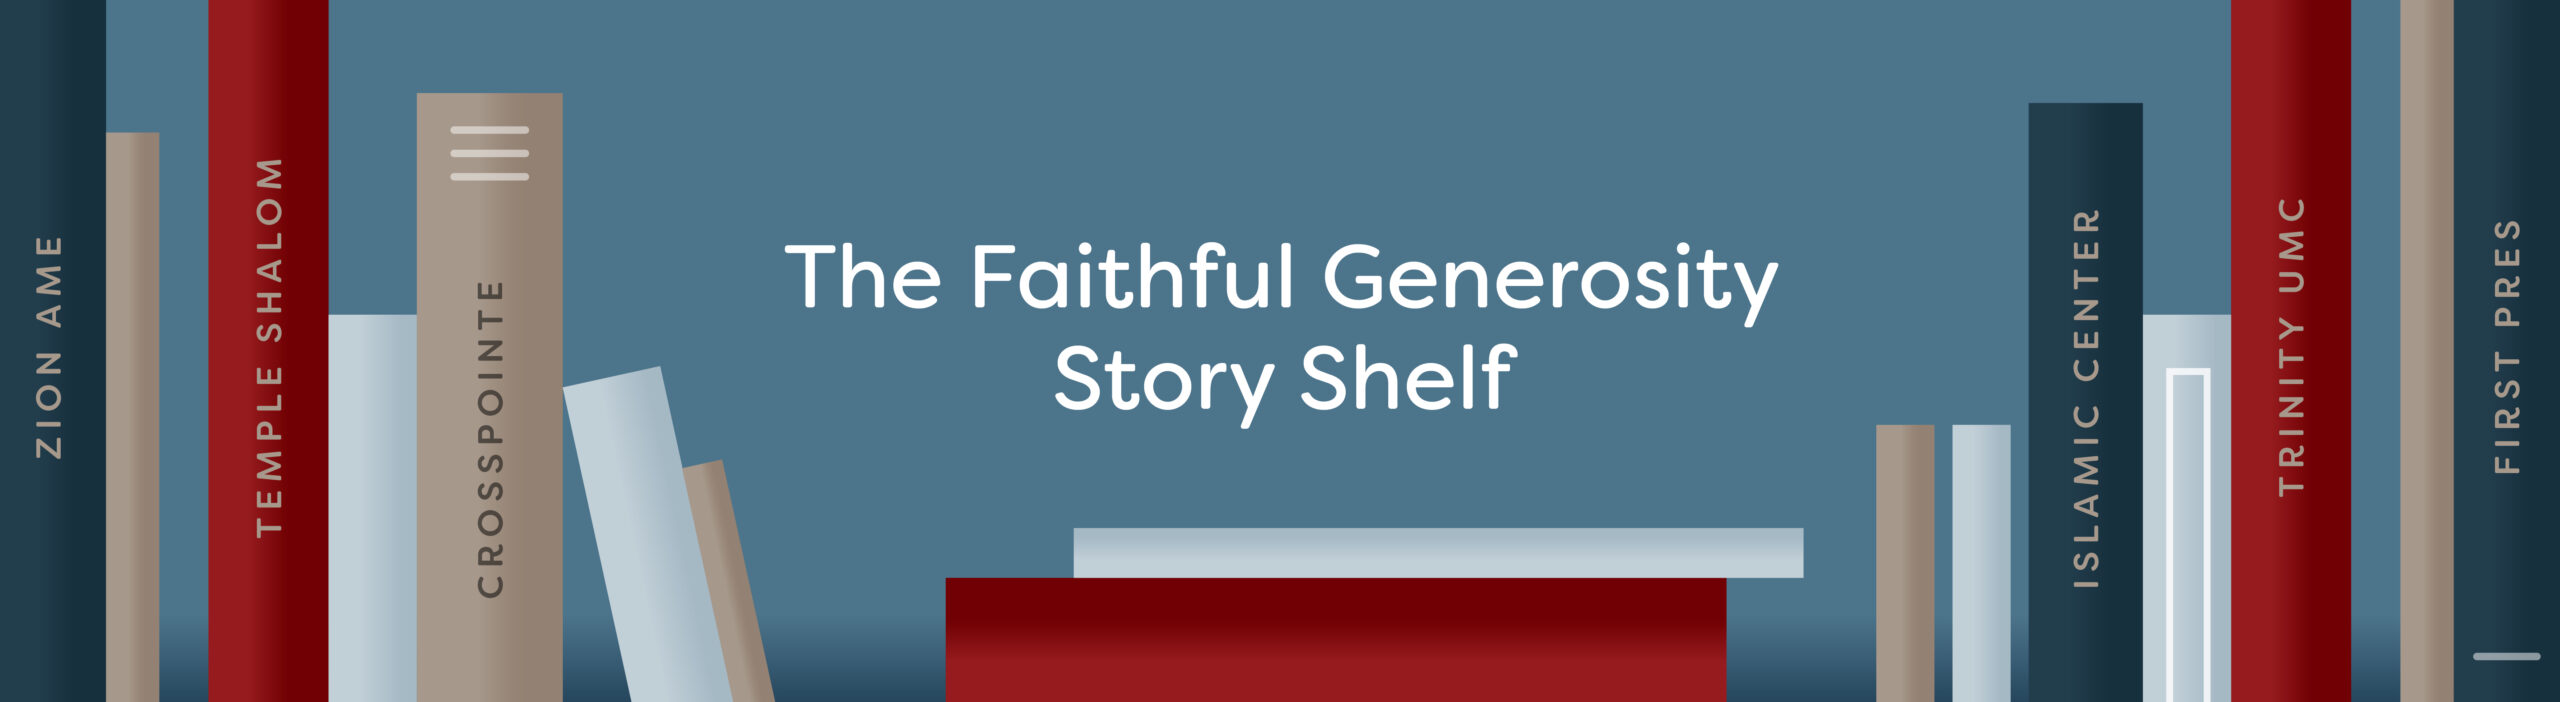 Image of books on a bookshelf with the text: "Faithful Generosity Story Shelf"